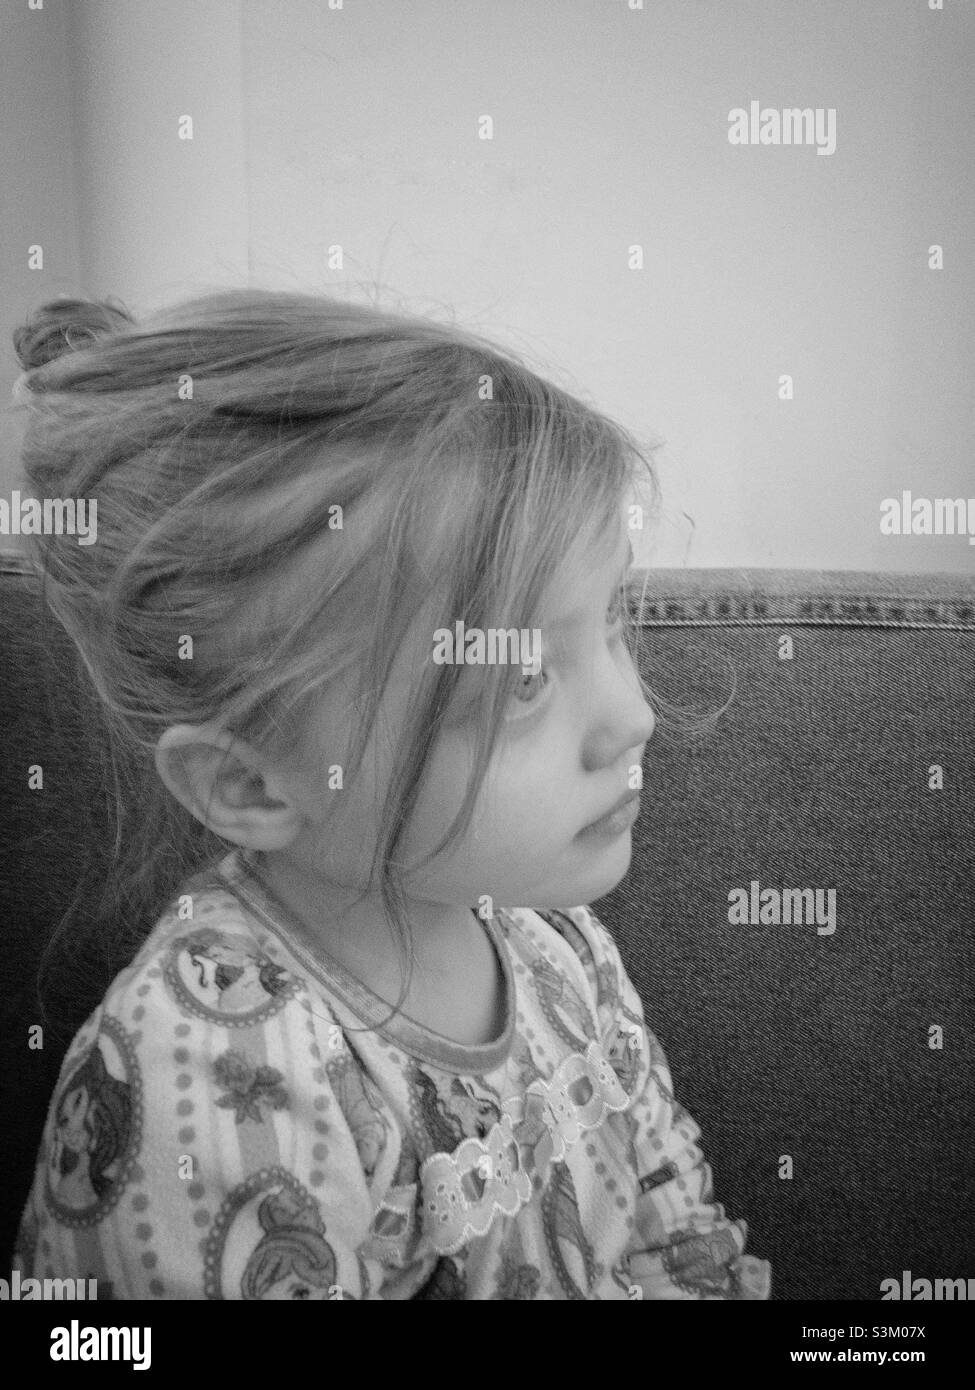 Retrato lateral en blanco y negro de una niña con su pelo en una bolita Foto de stock